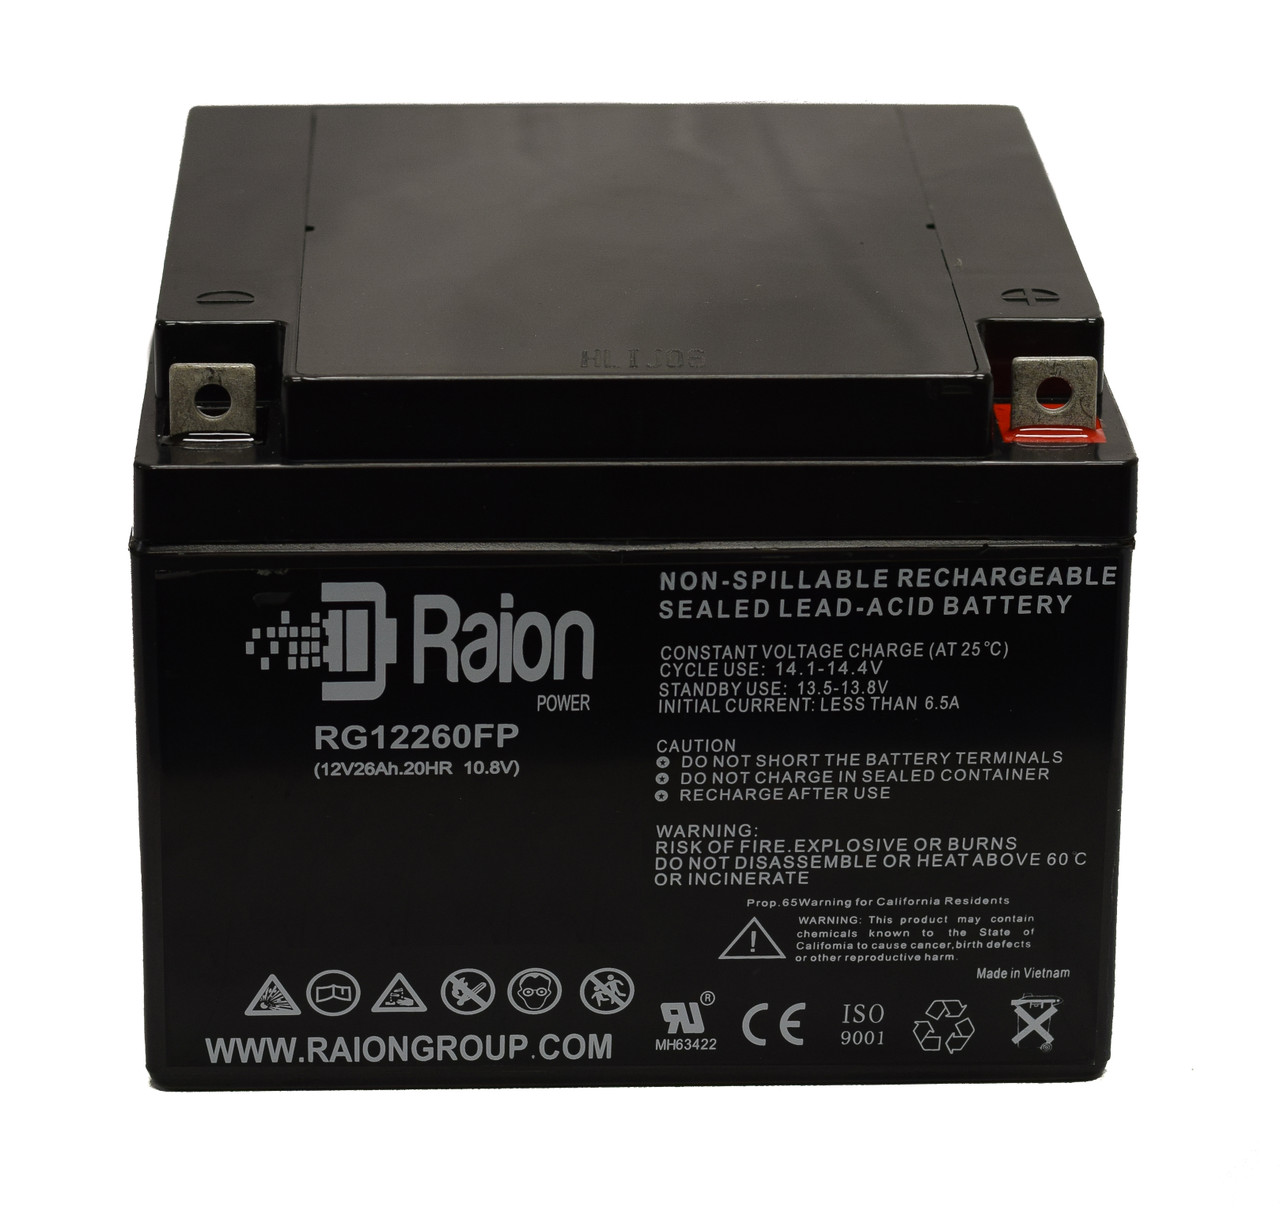 Raion Power RG12260FP 12V 26Ah Lead Acid Battery for Picker International Gamma Camera